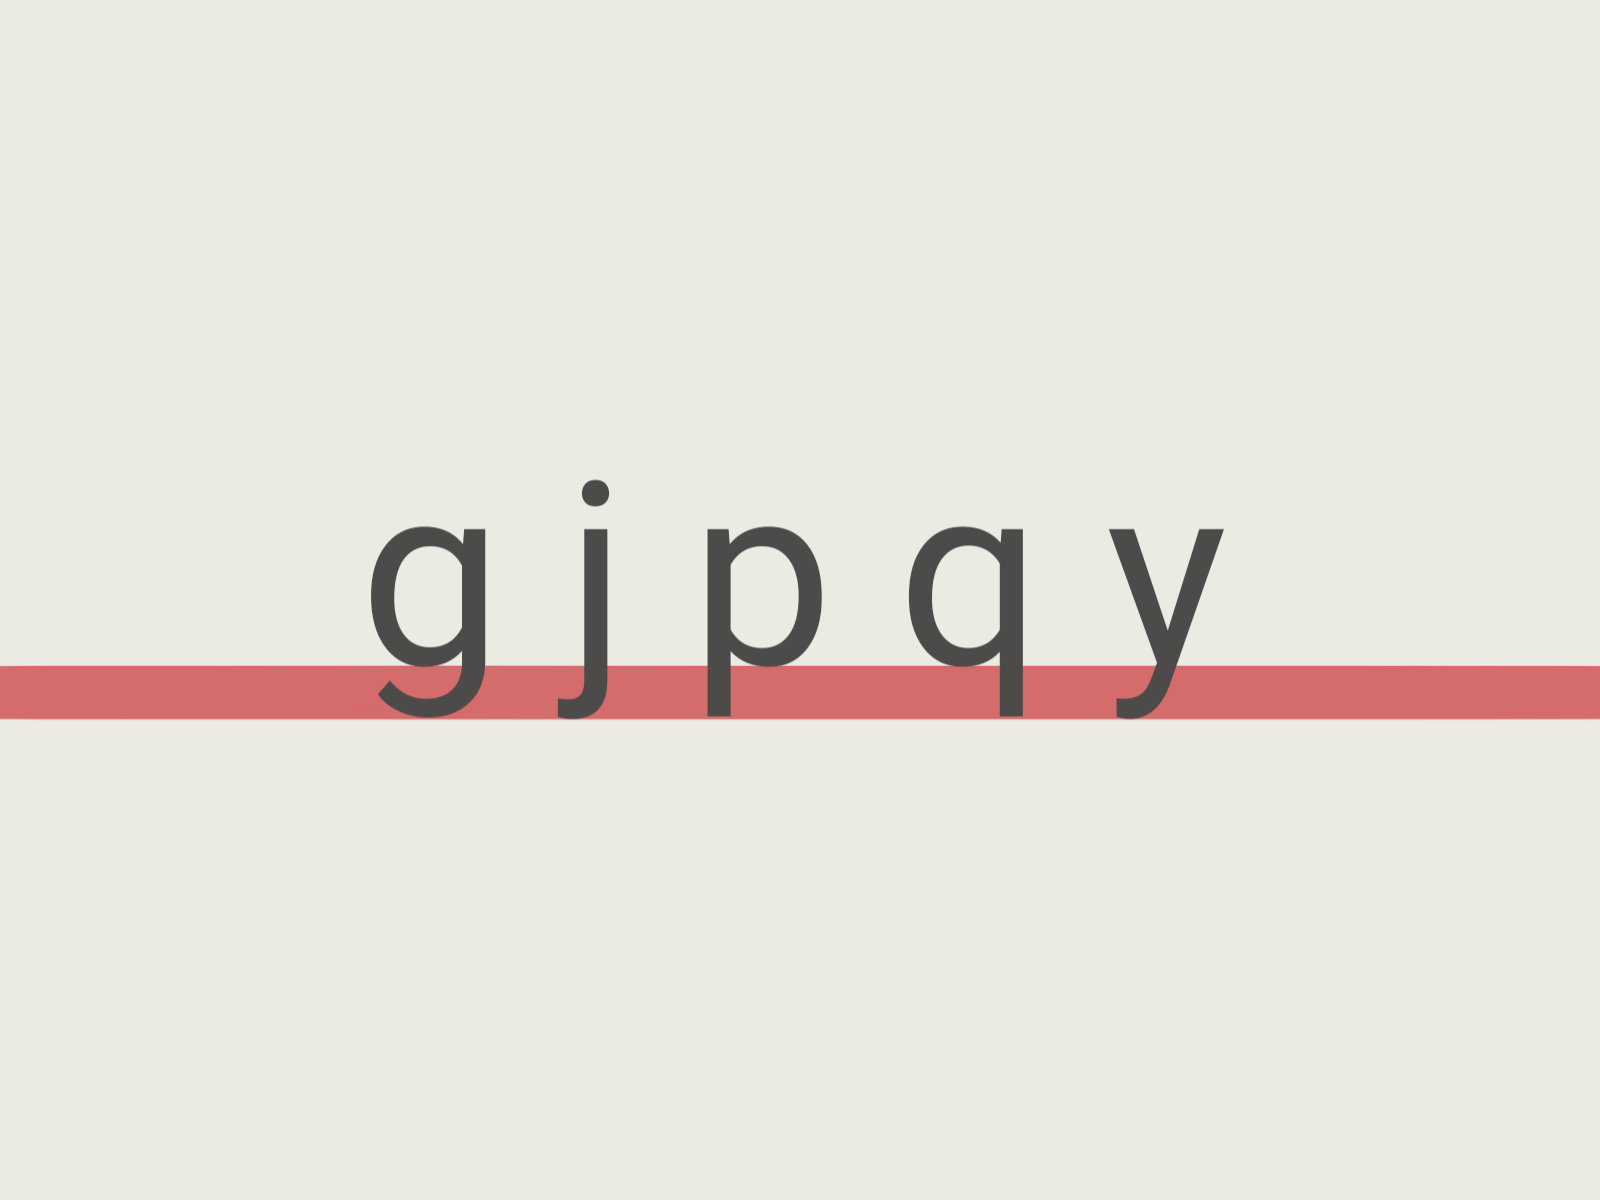 アルファベットの「g j p q y」のベースラインの下の部分に赤い線が薄く引かれている